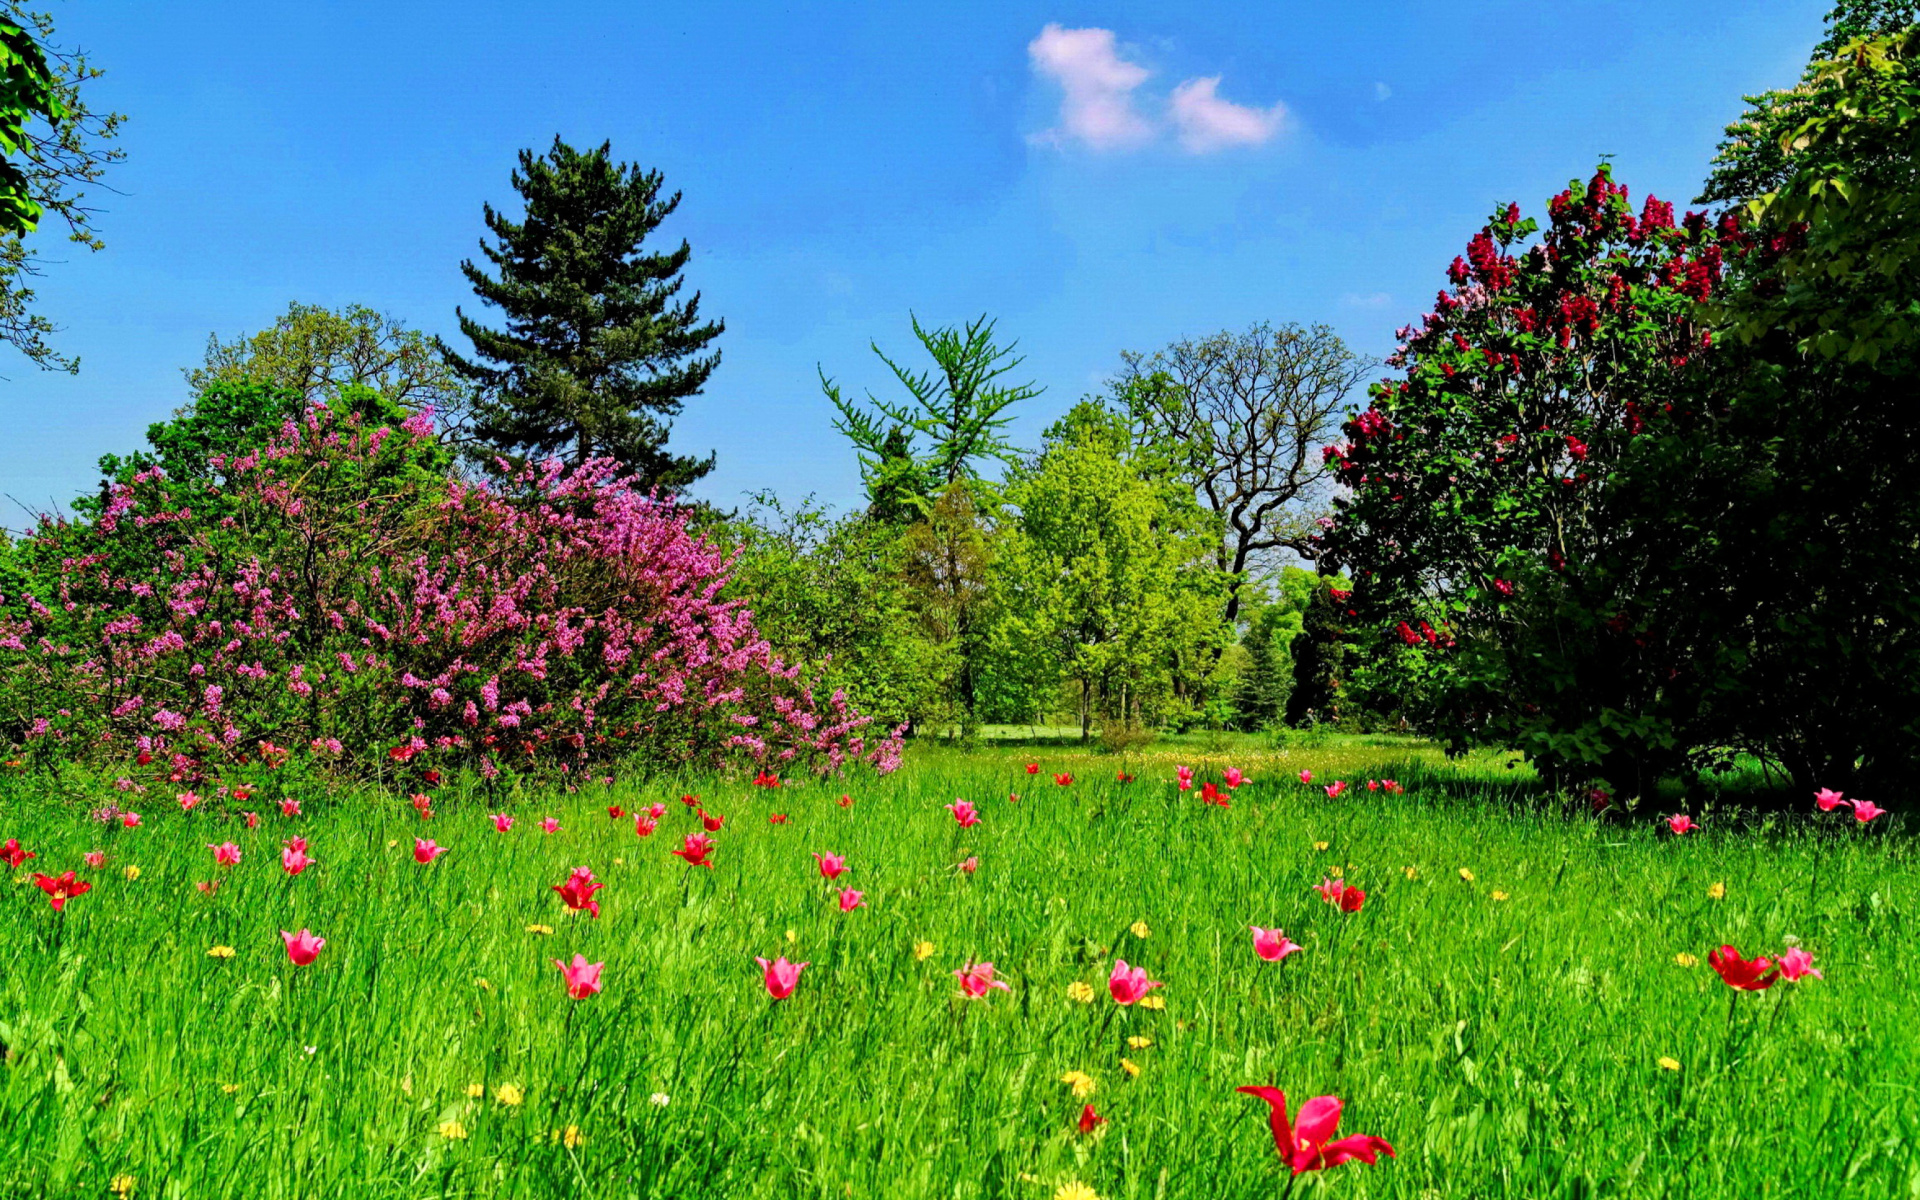 Скачать обои бесплатно Трава, Цветок, Дерево, Поле, Весна, Ландшафт, Земля/природа картинка на рабочий стол ПК